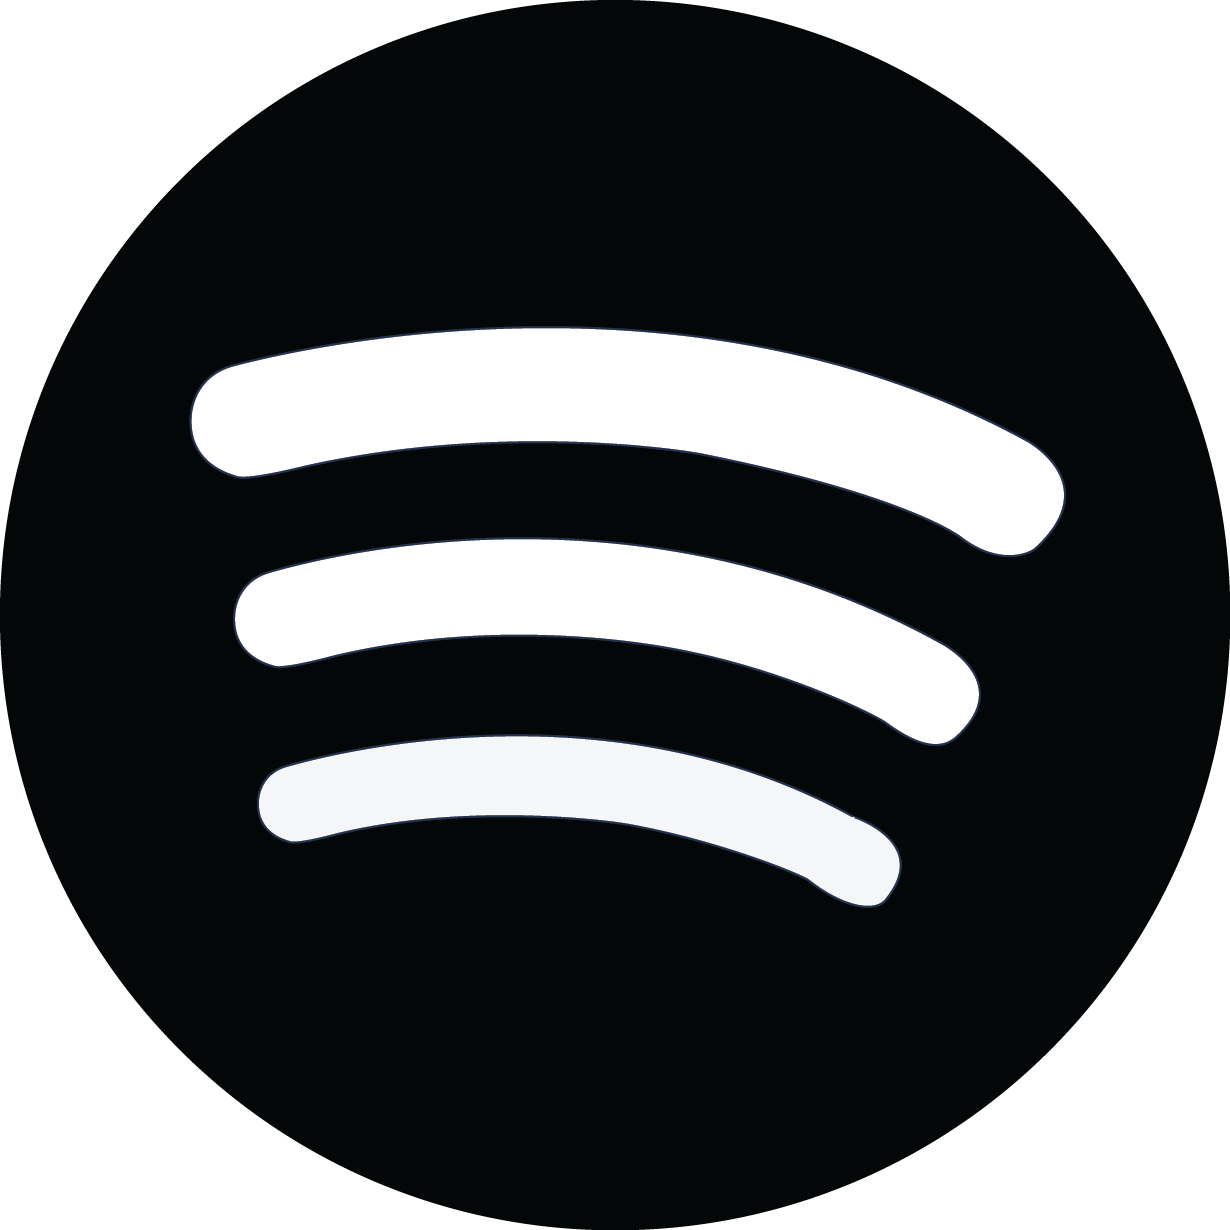 Jakob Lindhagen - Spotify Logo History